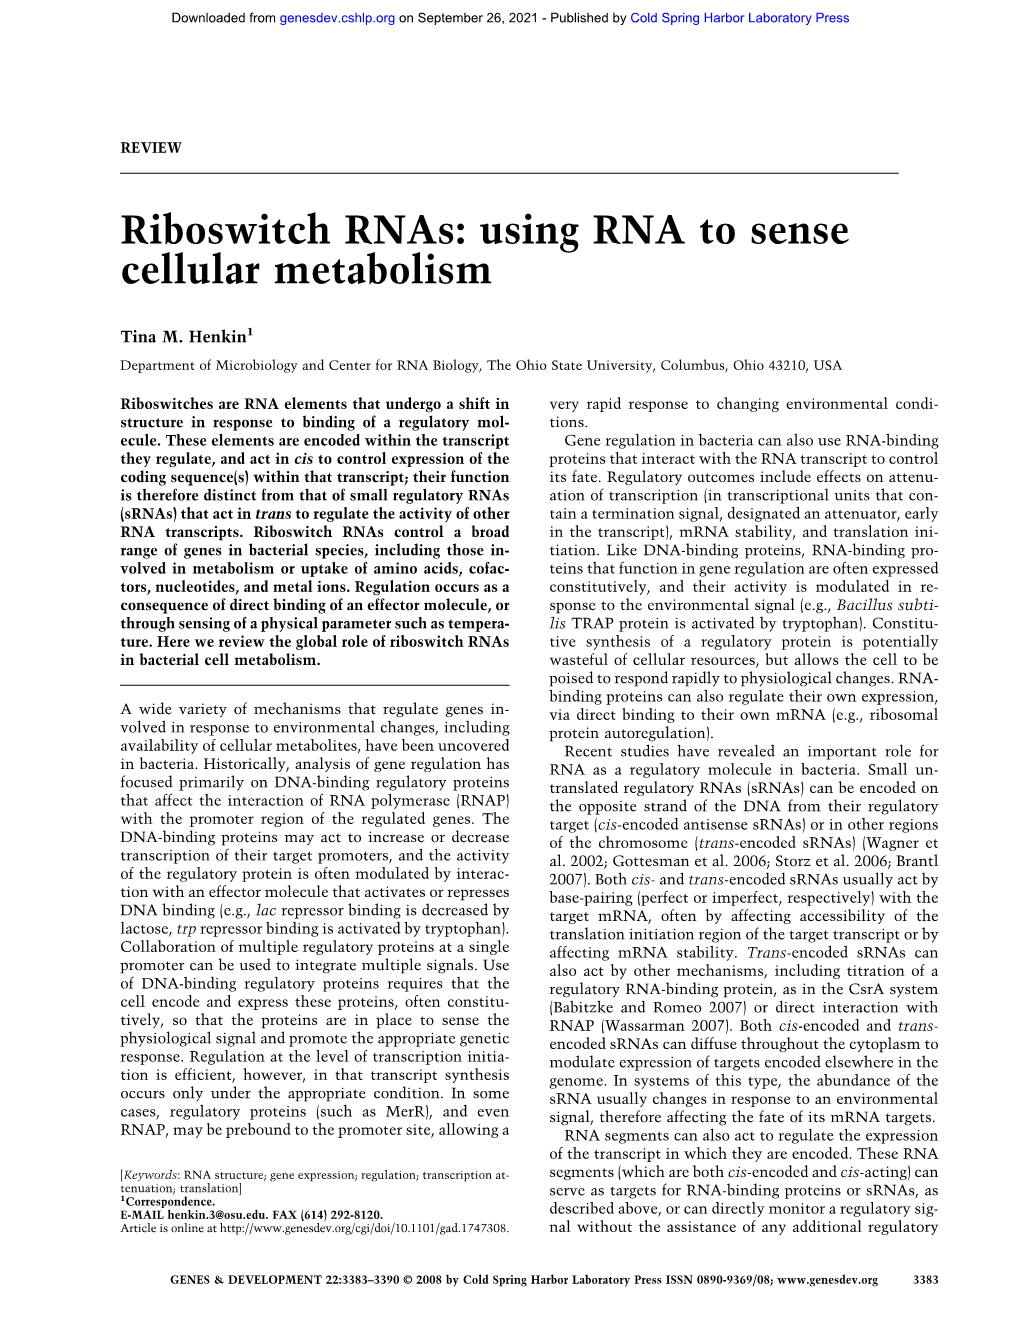 Riboswitch Rnas: Using RNA to Sense Cellular Metabolism